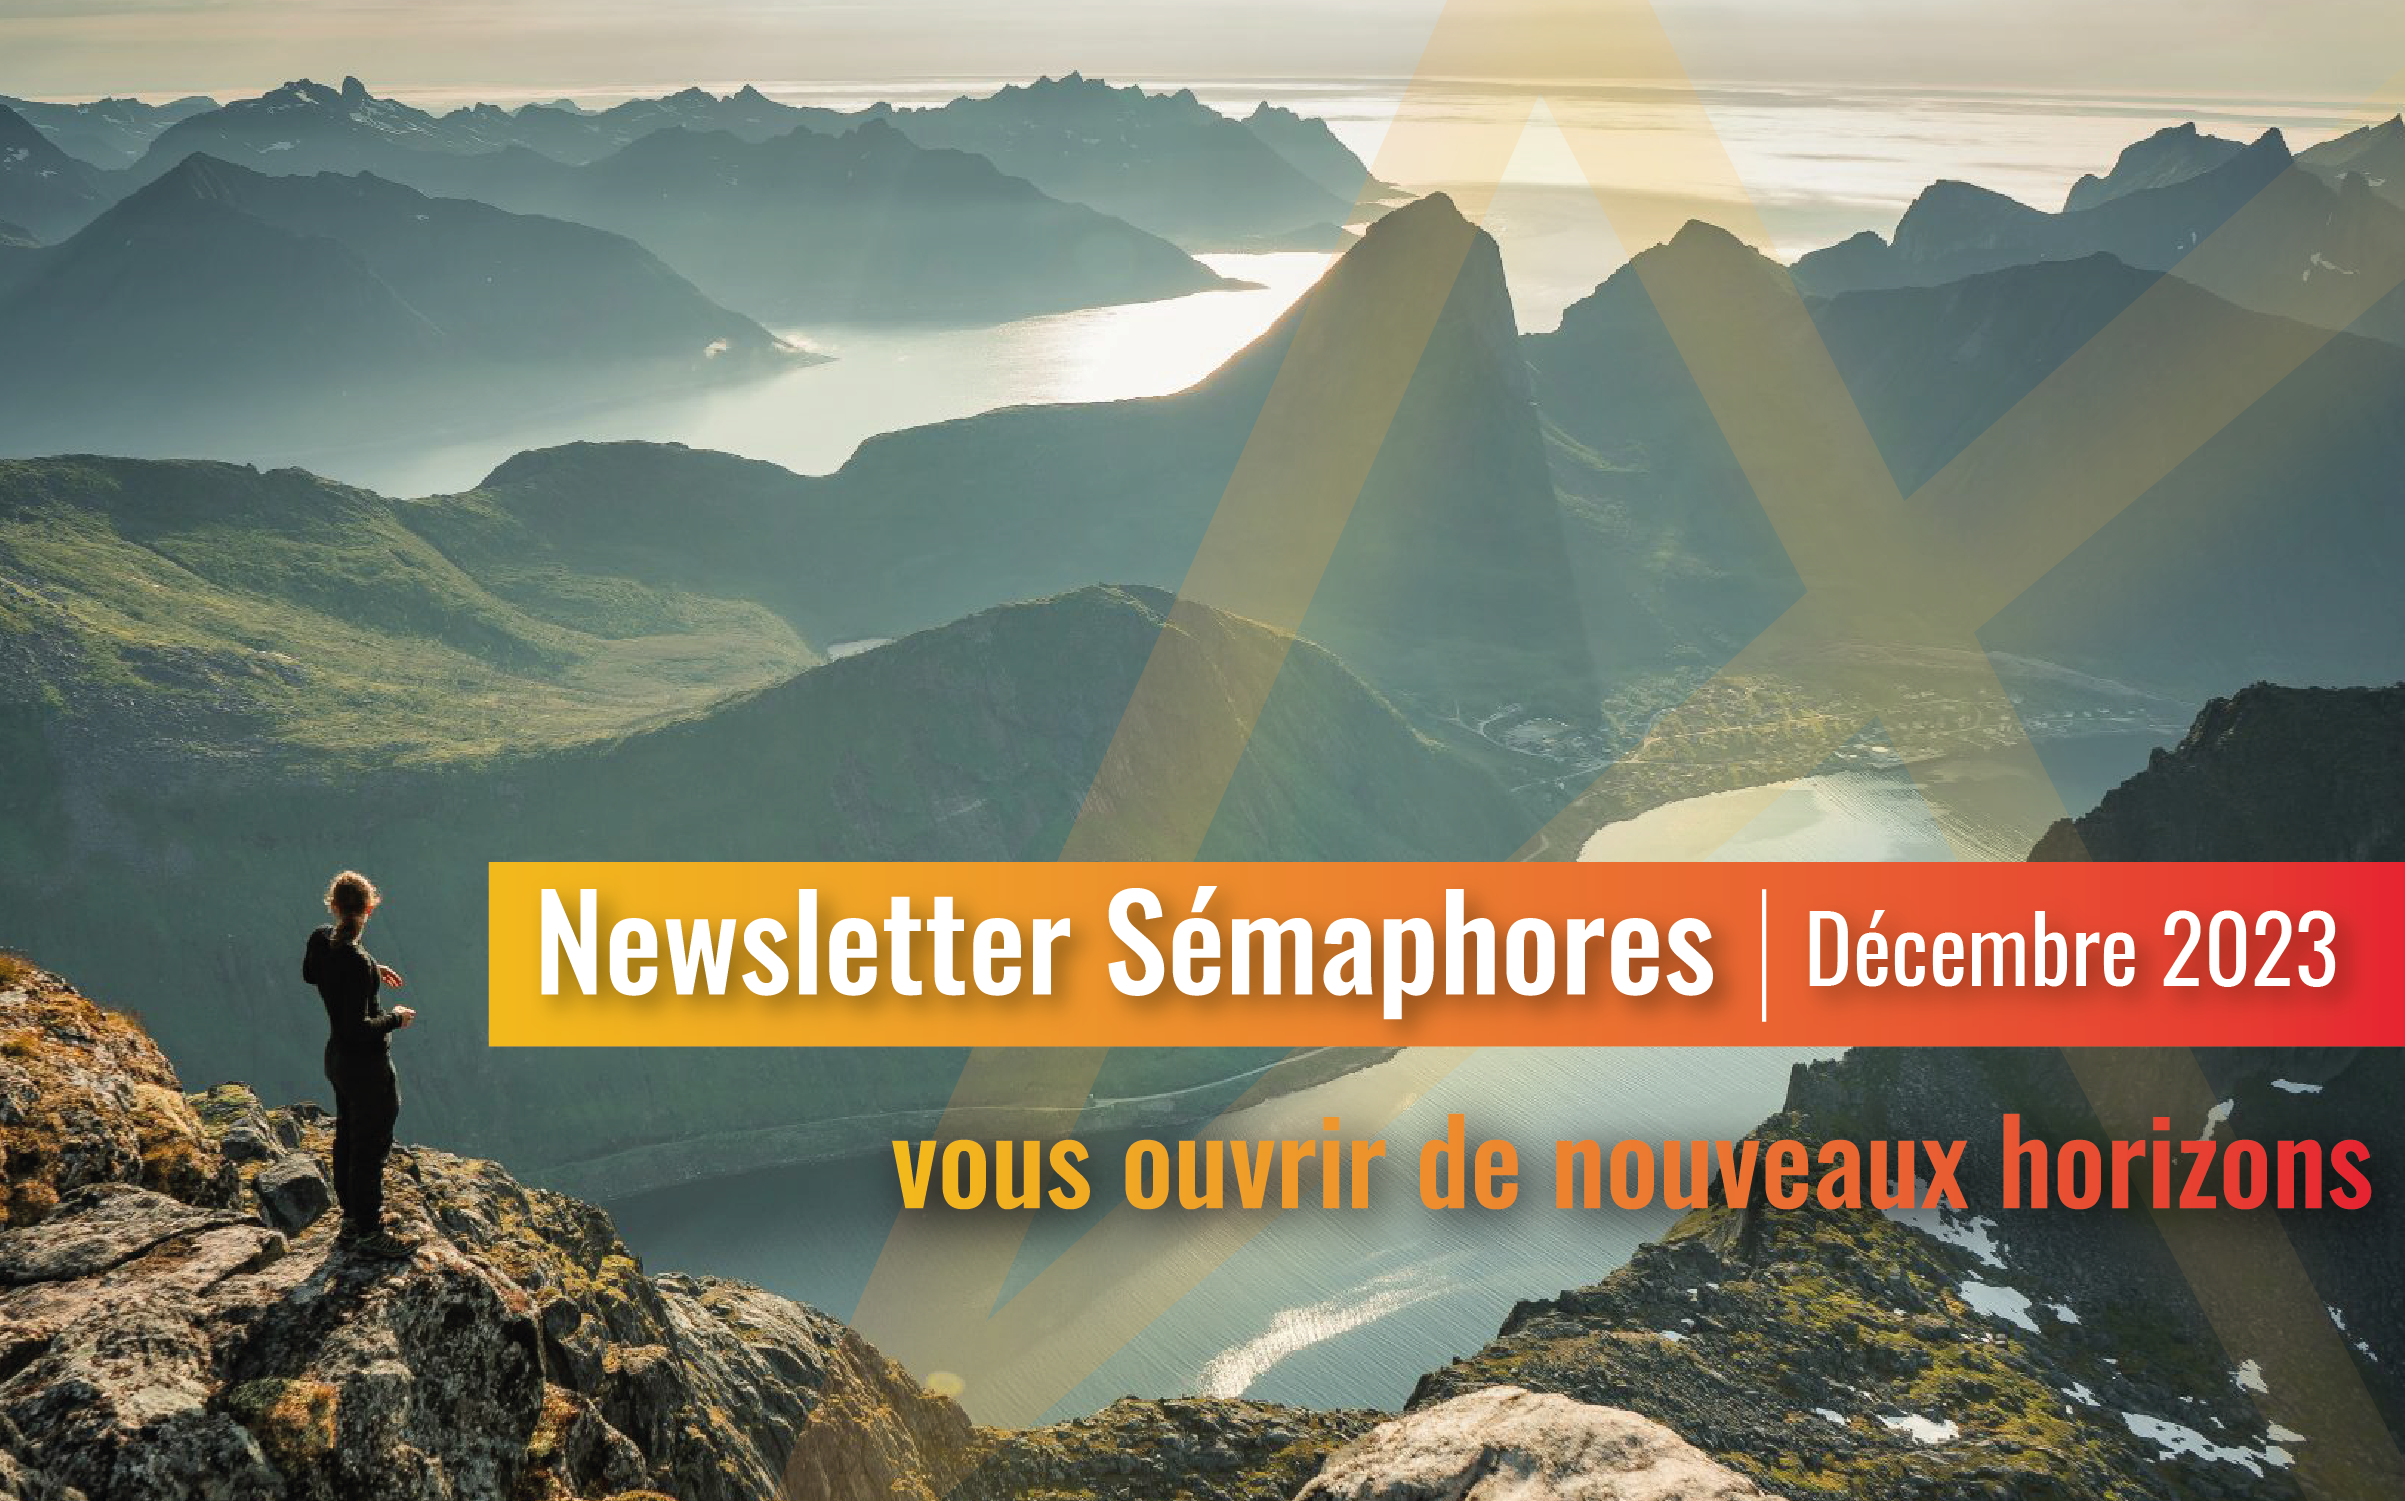 La newsletter Sémaphores - Décembre 2023